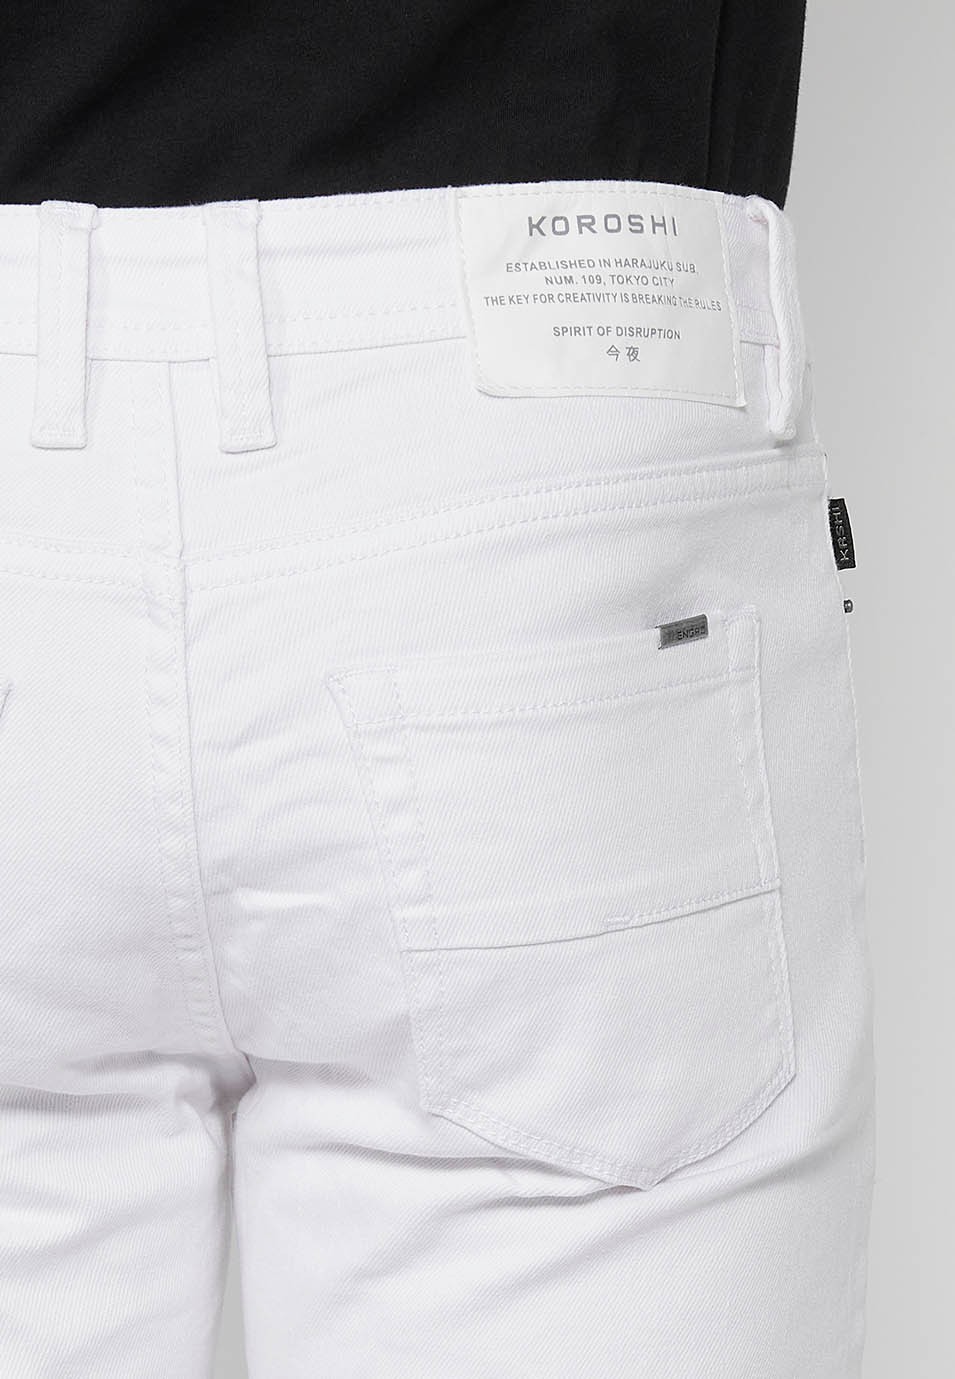 Pantalons jeans super skinny amb Tancament davanter amb cremallera i botó de Color Denim Blanc per a Home 7